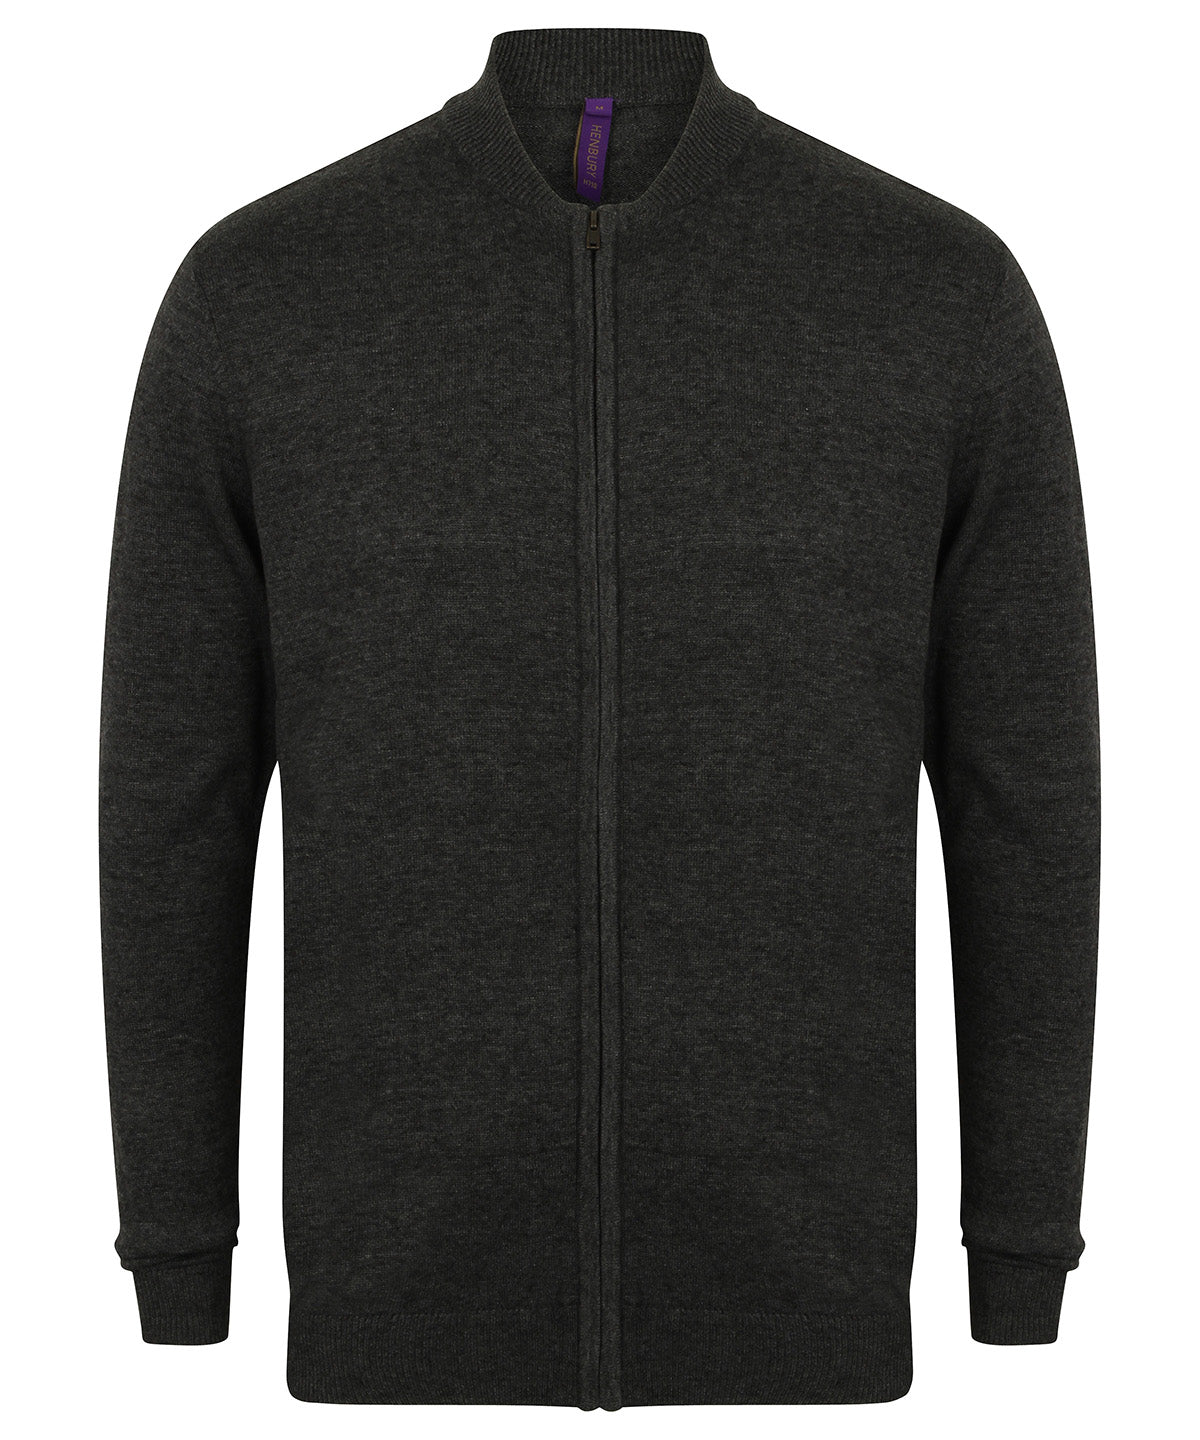 Personalised Jackets - Black Henbury Unisex zip-through cardigan